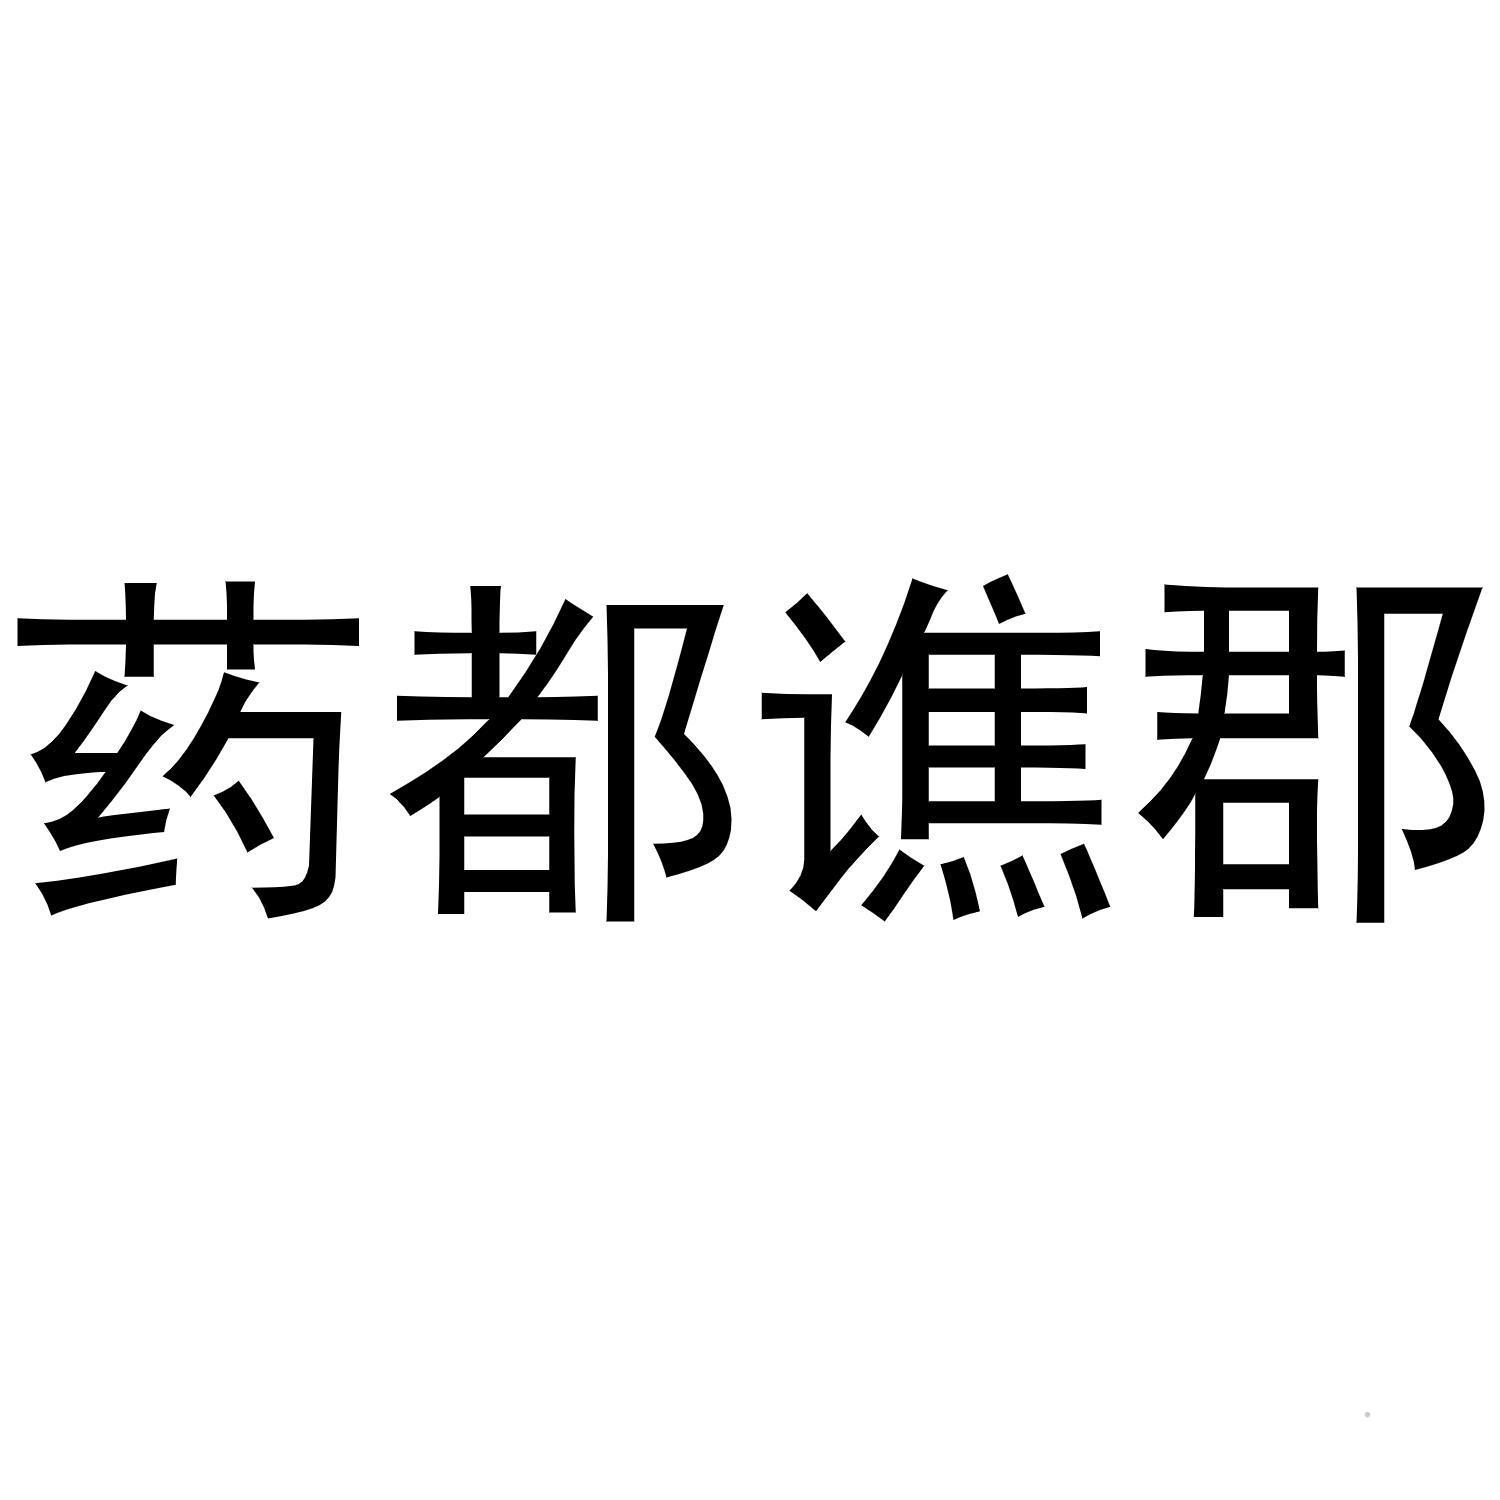 药都谯郡logo